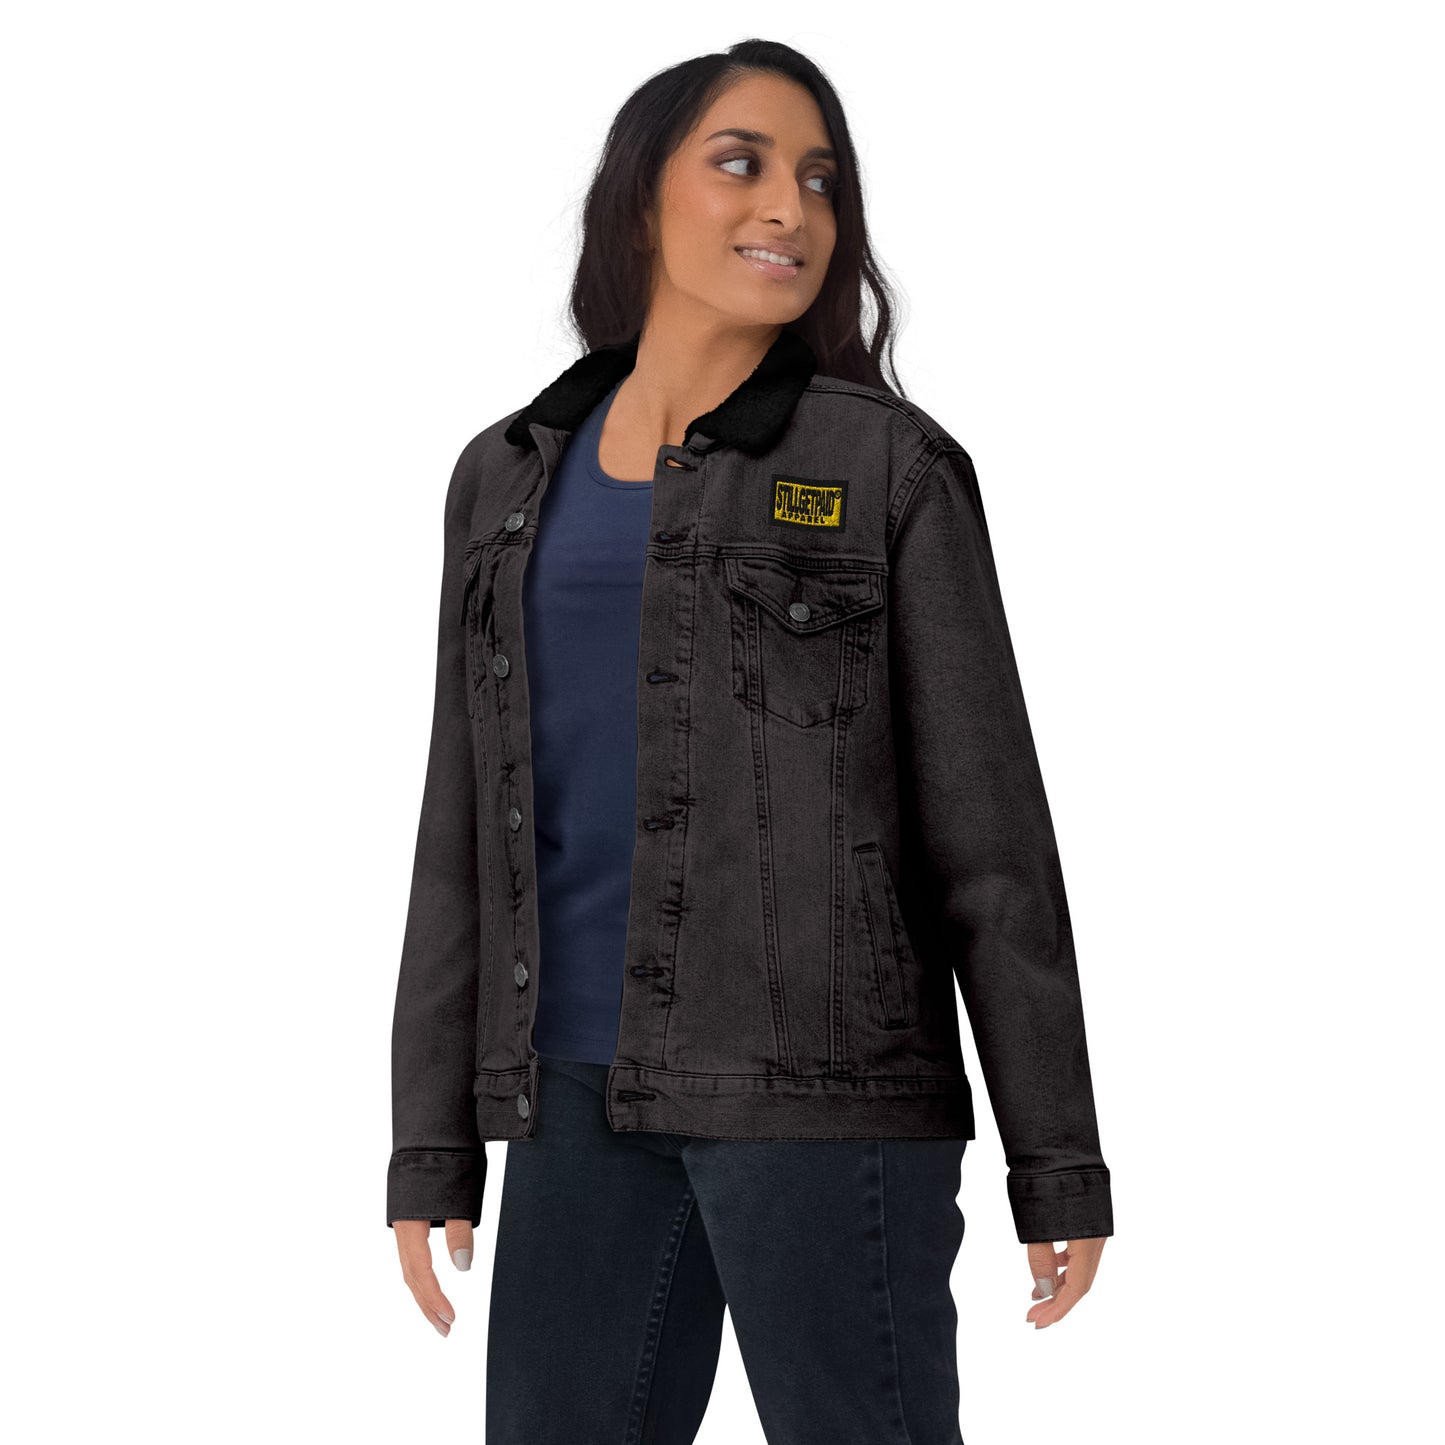 STILLGETPAID® APPAREL Unisex denim sherpa jacket